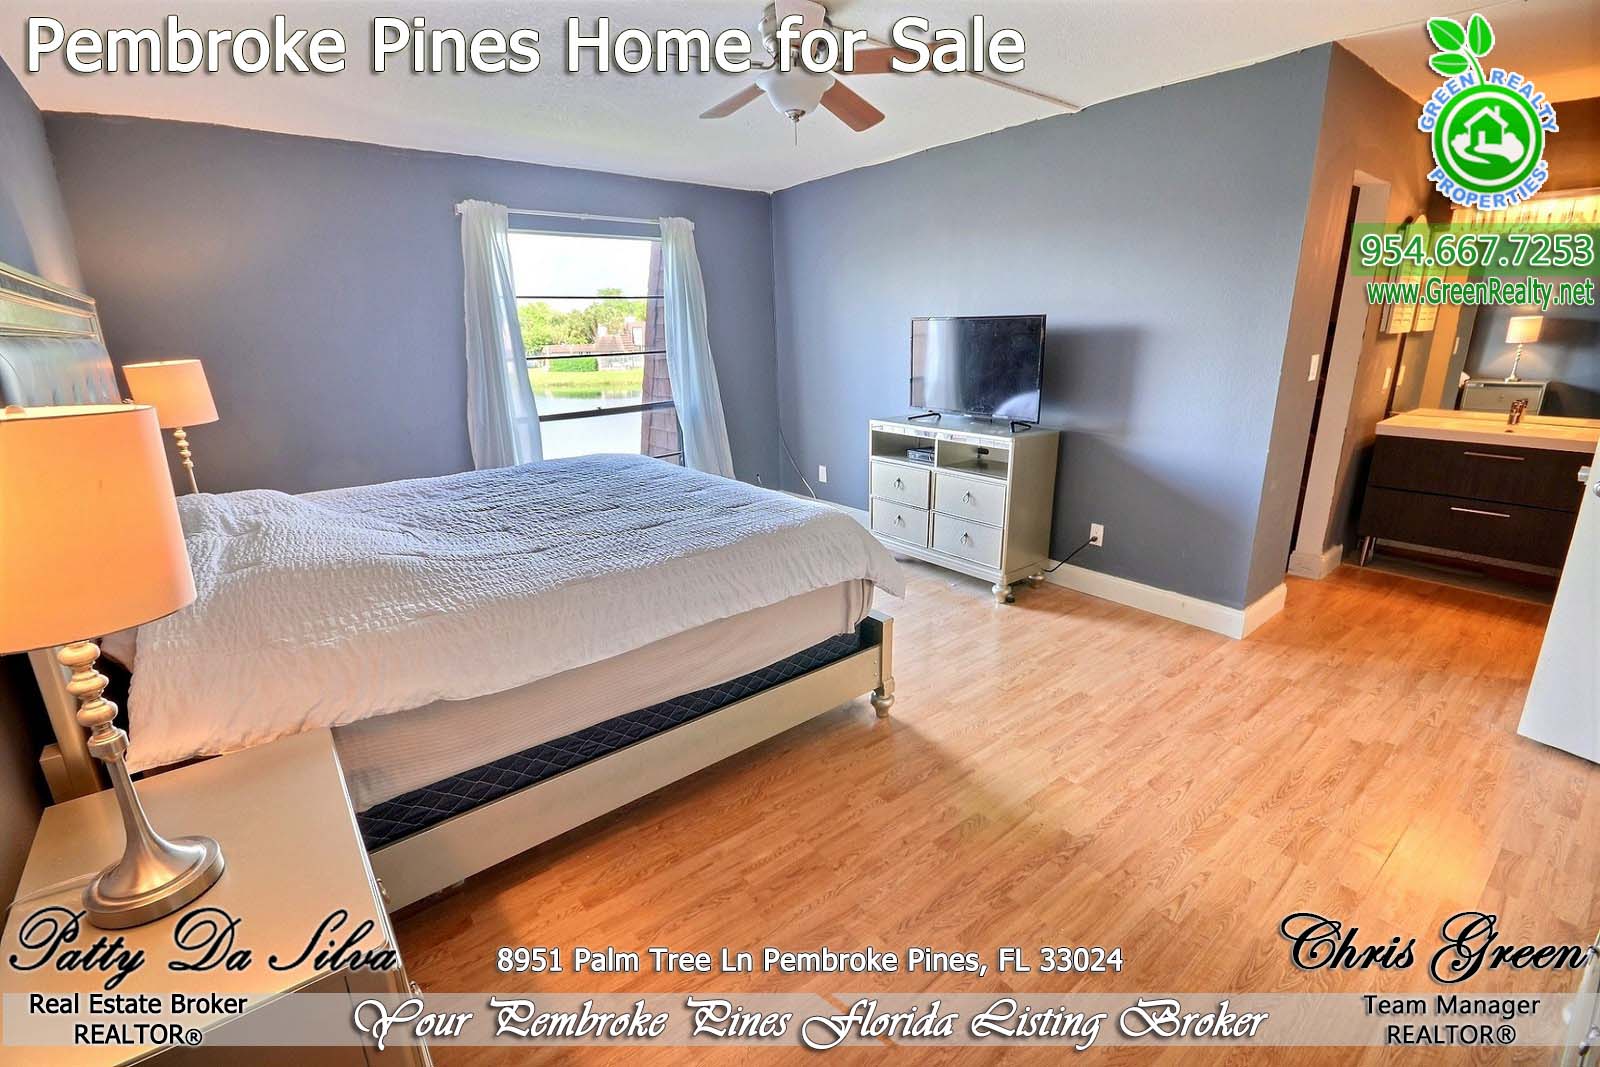 Pembroke Pines Homes For Sale - 8951 Palm Tree Lane (19)